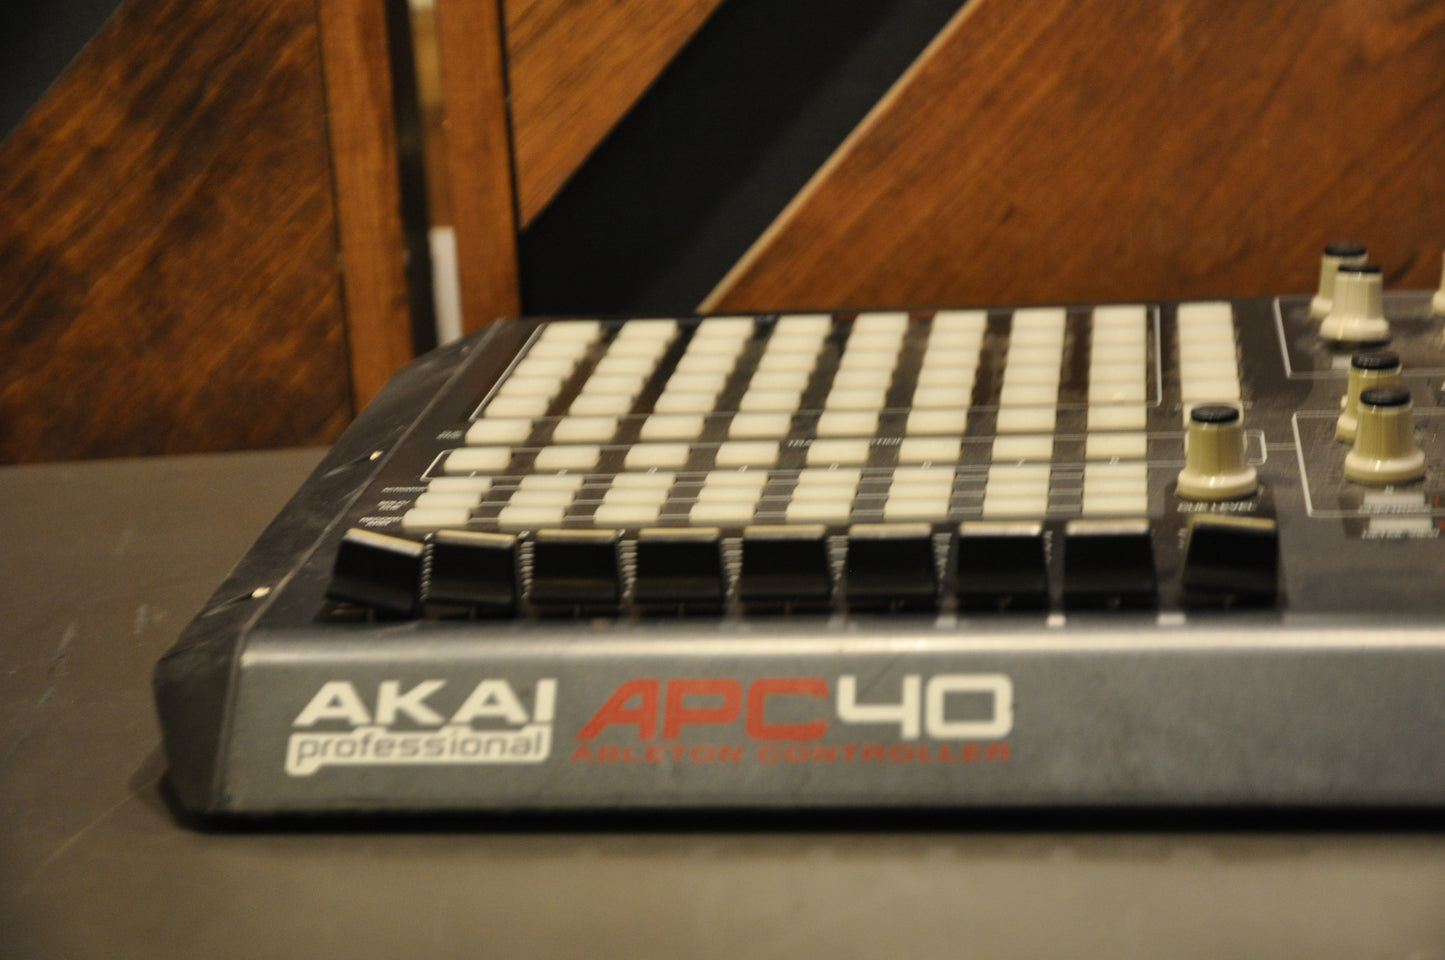 Akai APC 40 Ableton Controller (C101521)